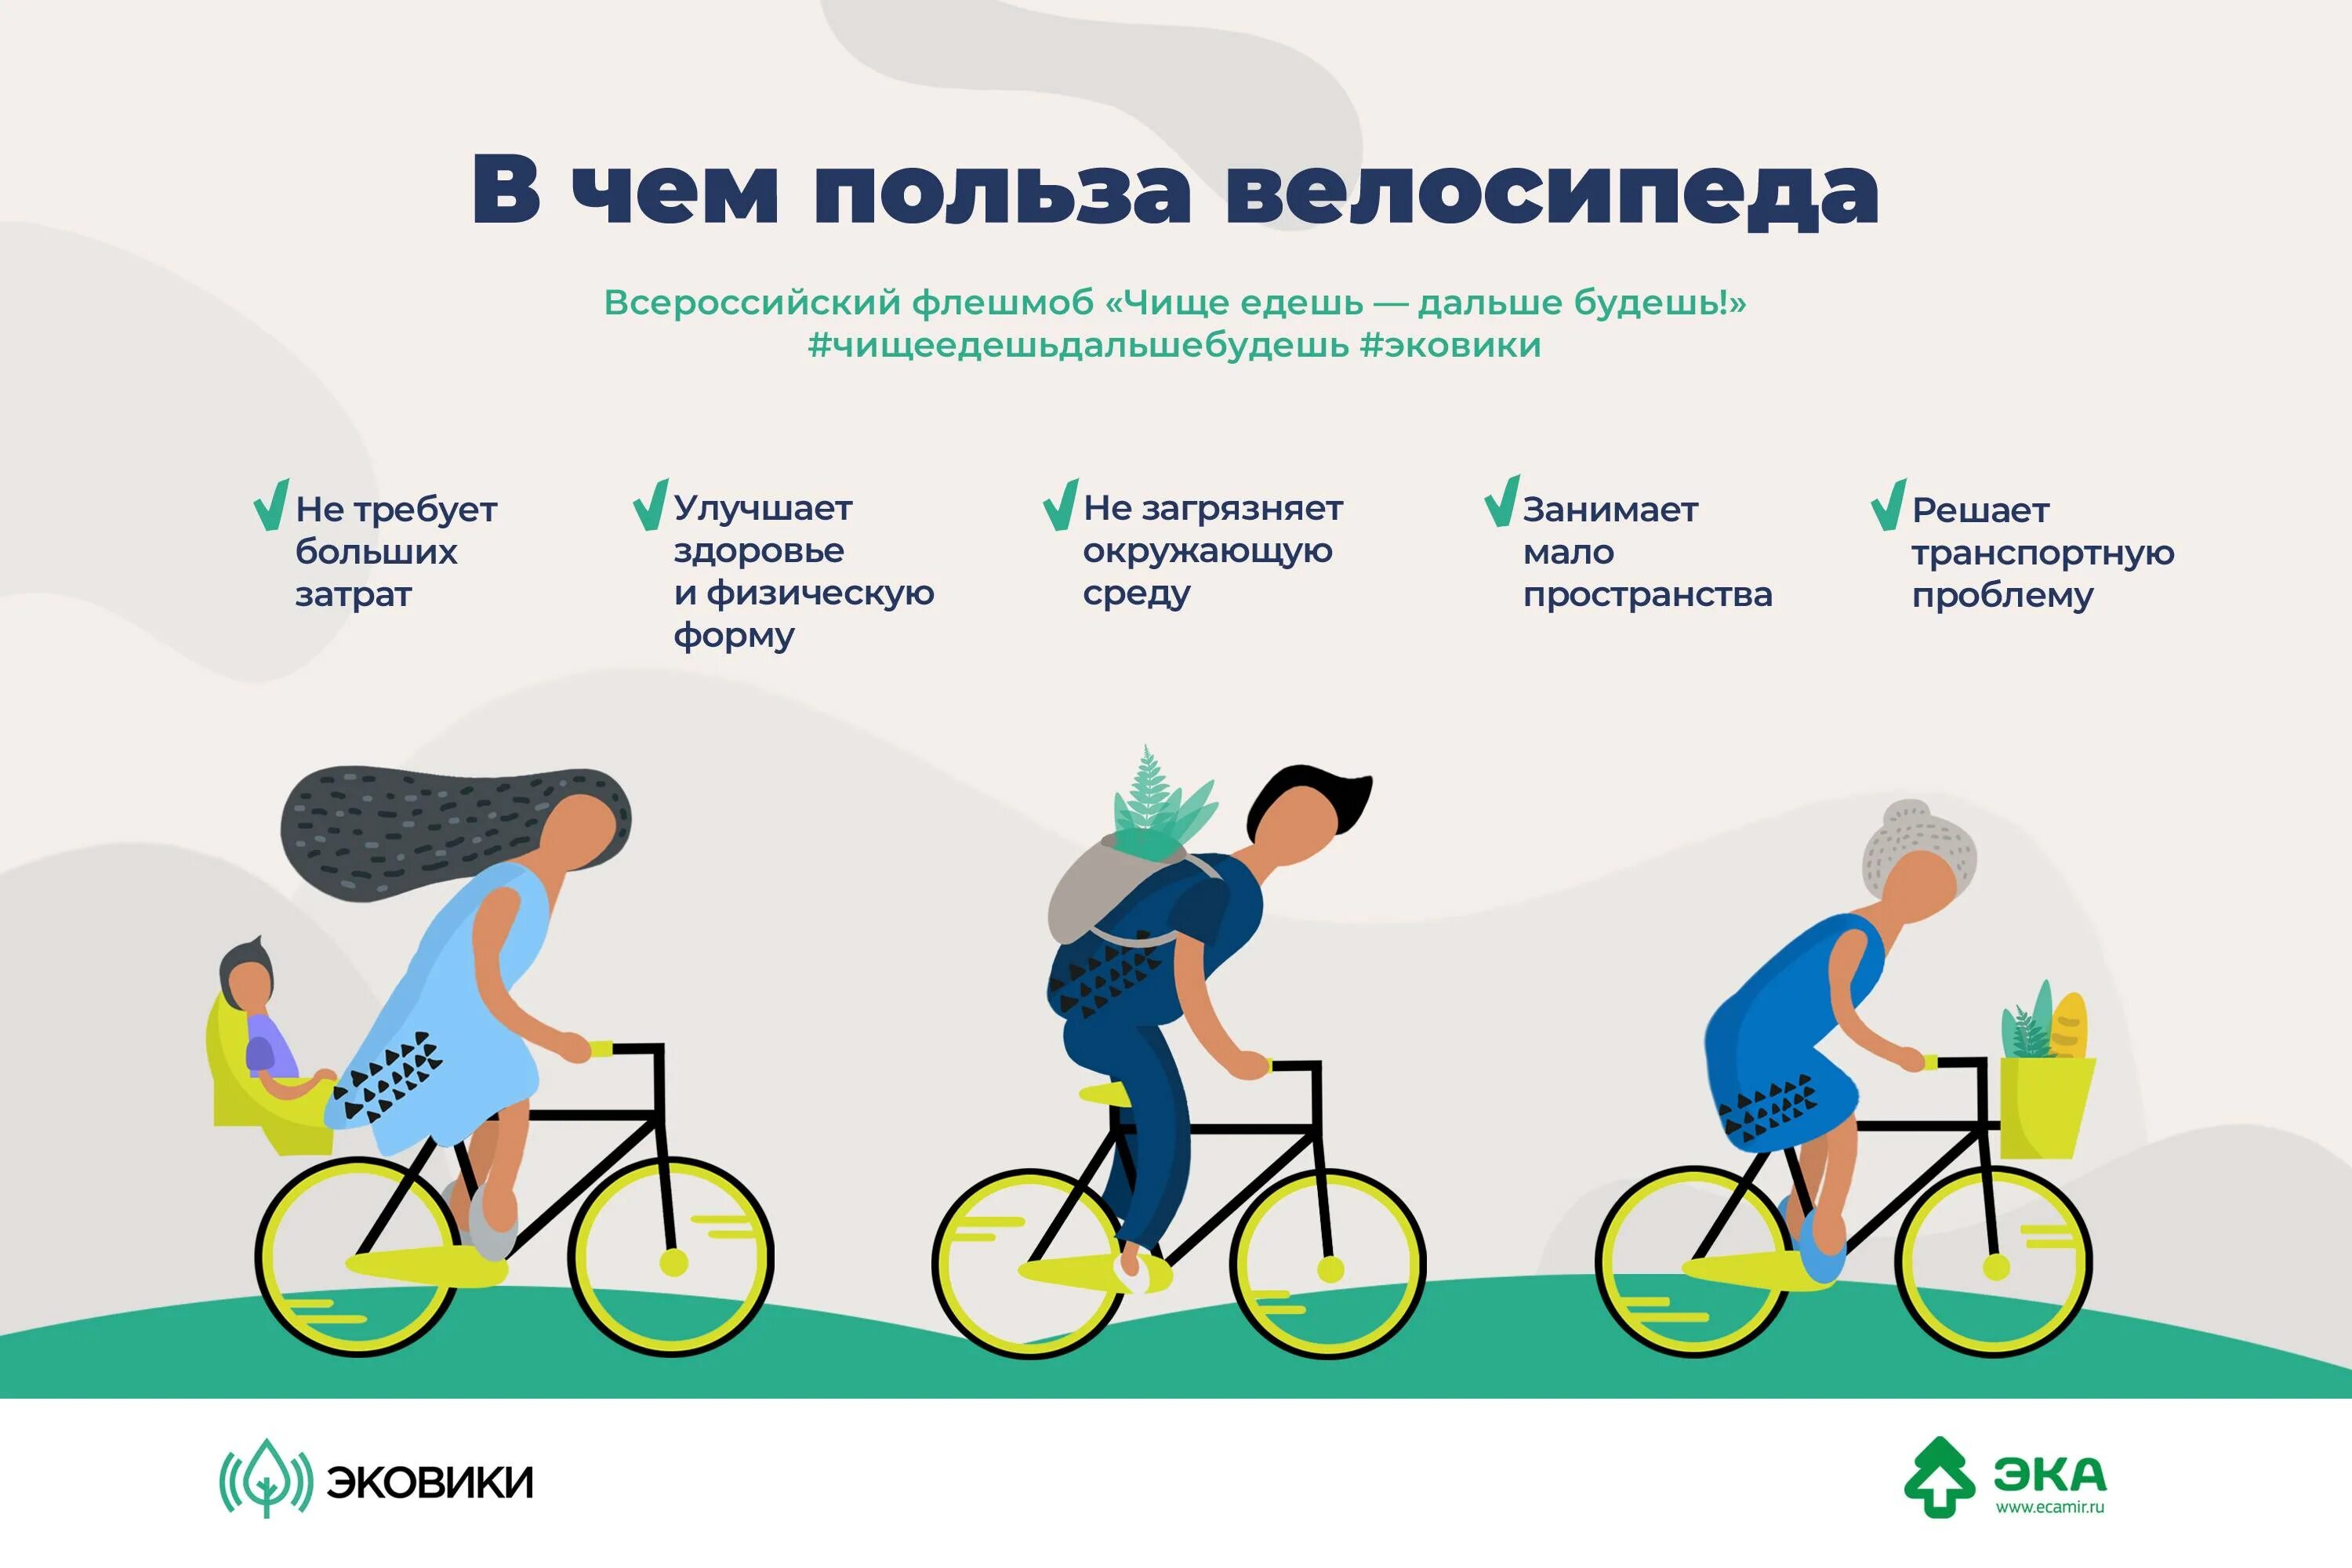 Можно ли кататься на велосипеде после. Польза велосипеда. Езда на велосипеде польза. Велосипед и здоровье. Велосипед полезно для здоровья.